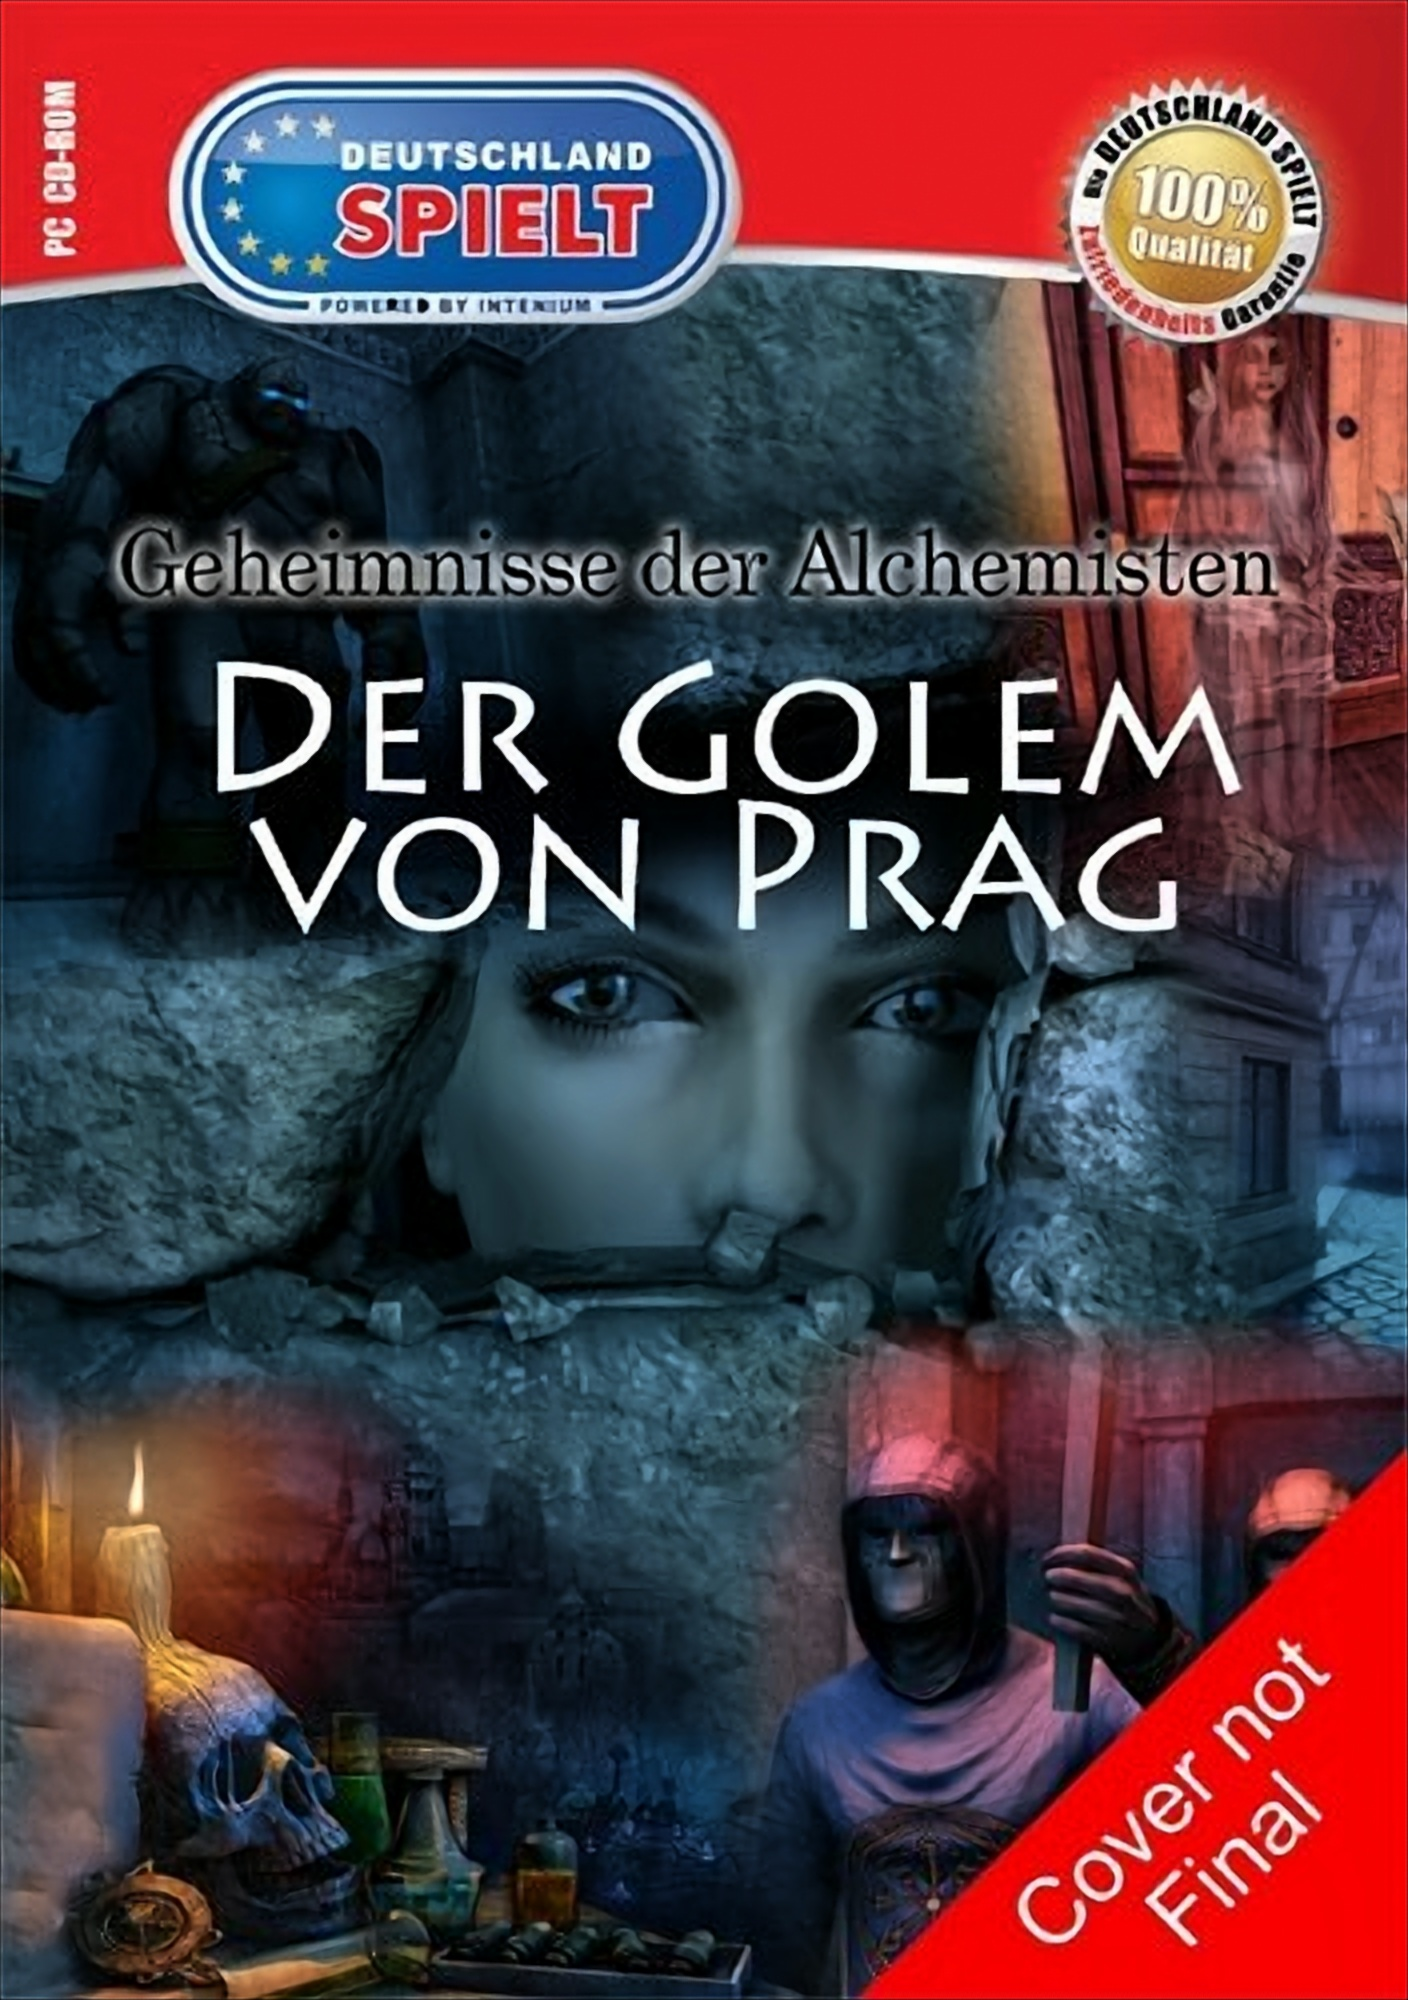 [PC] Das Prag Golem Alchemisten: Geheimnisse von - der Der